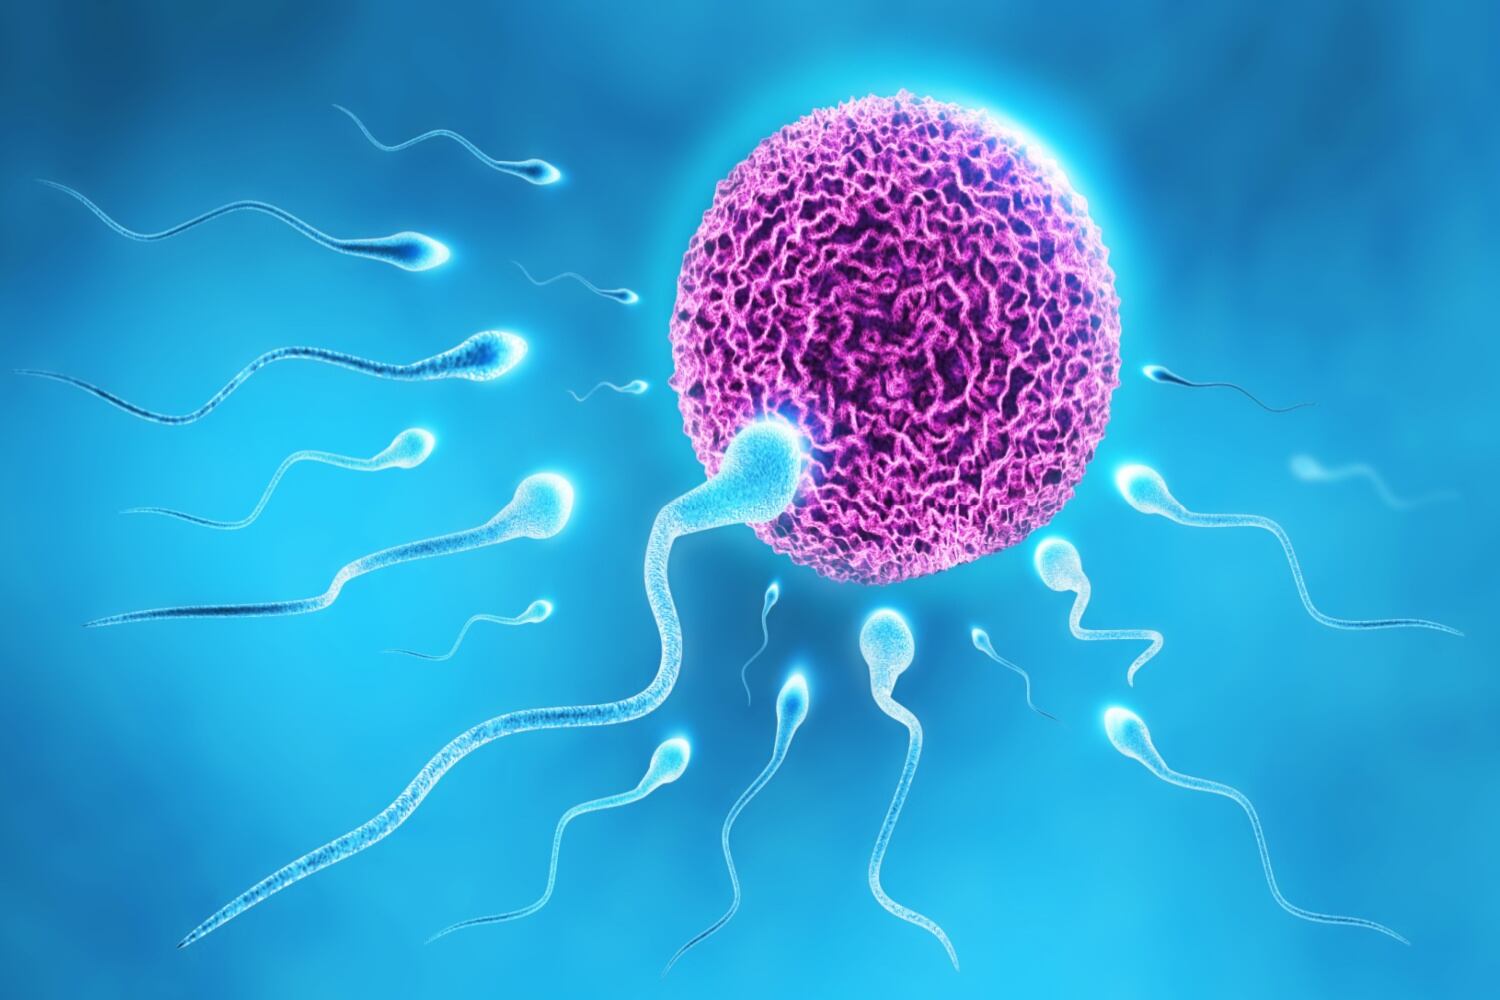 Sperm and ovum movement